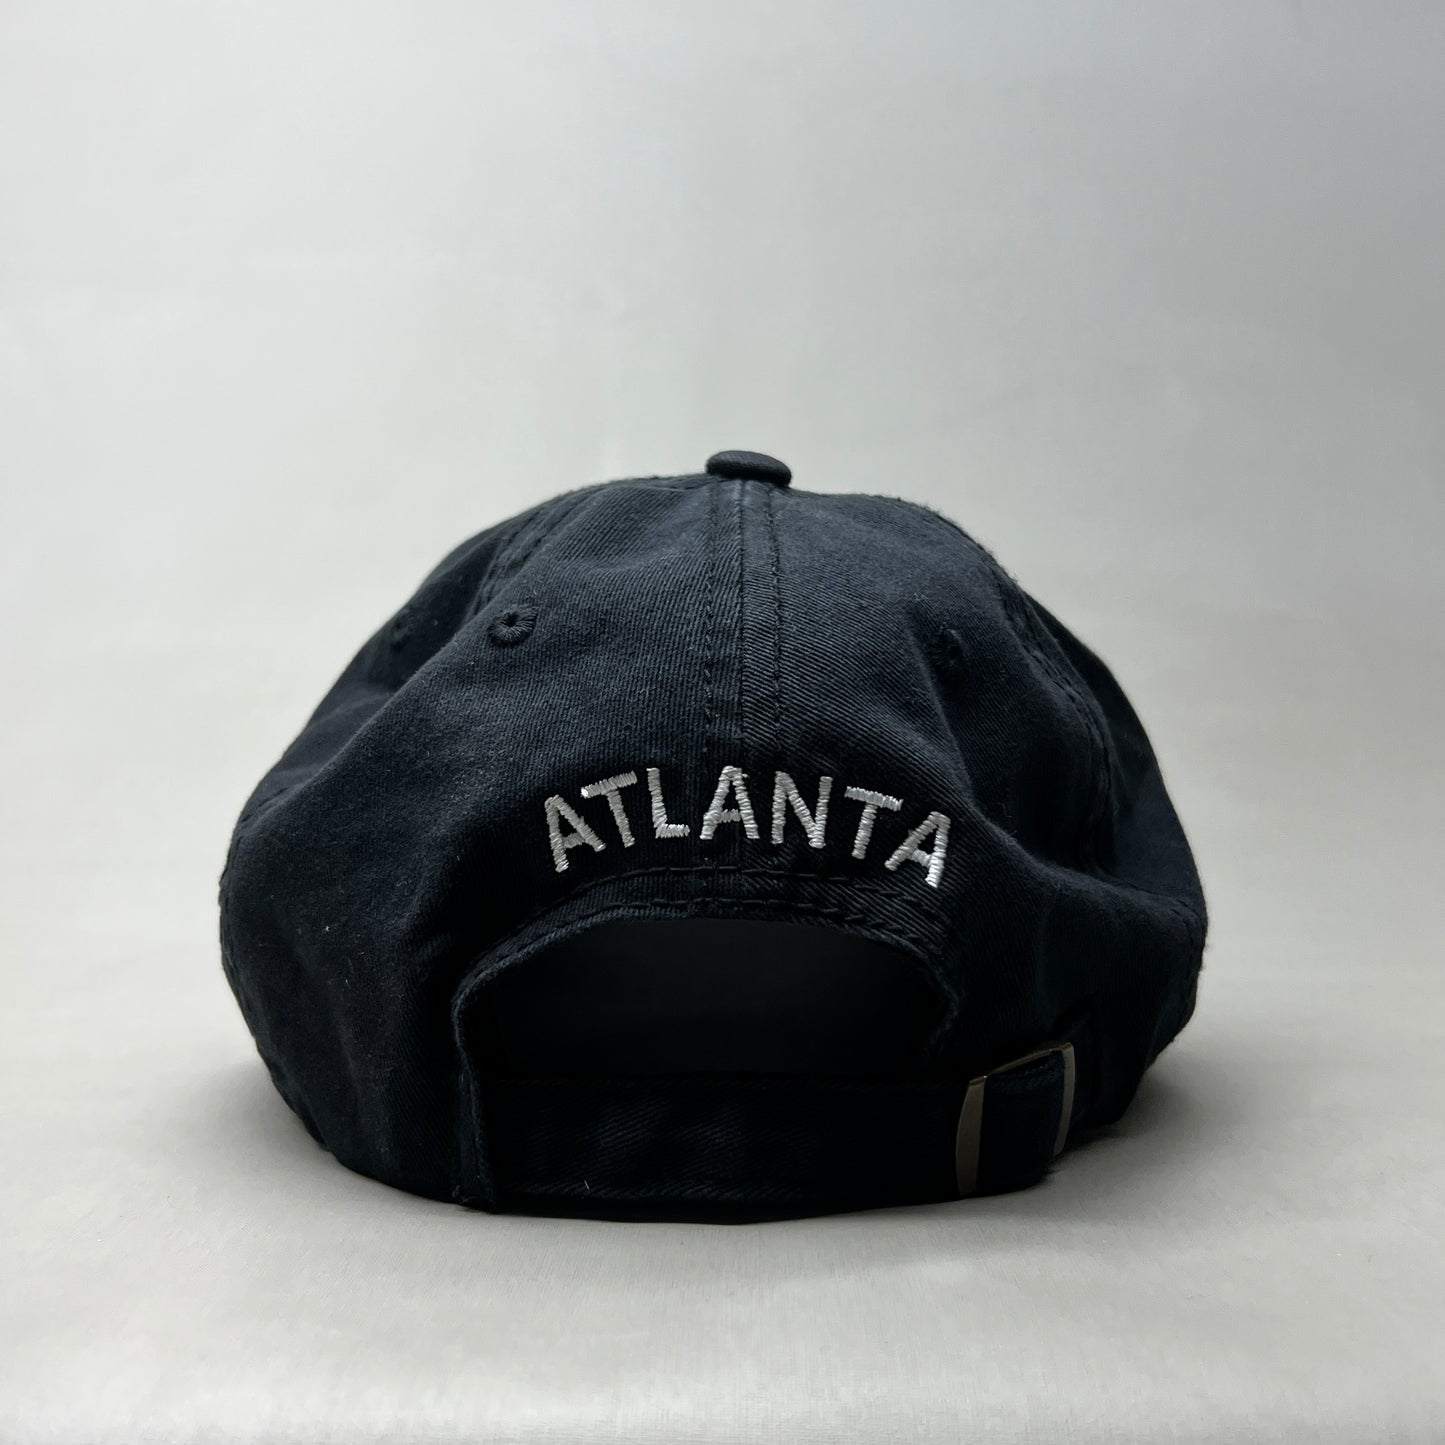 COCA-COLA Atlanta Script Stretch Baseball Cap Fit Sz One Size Black 23632 (New)